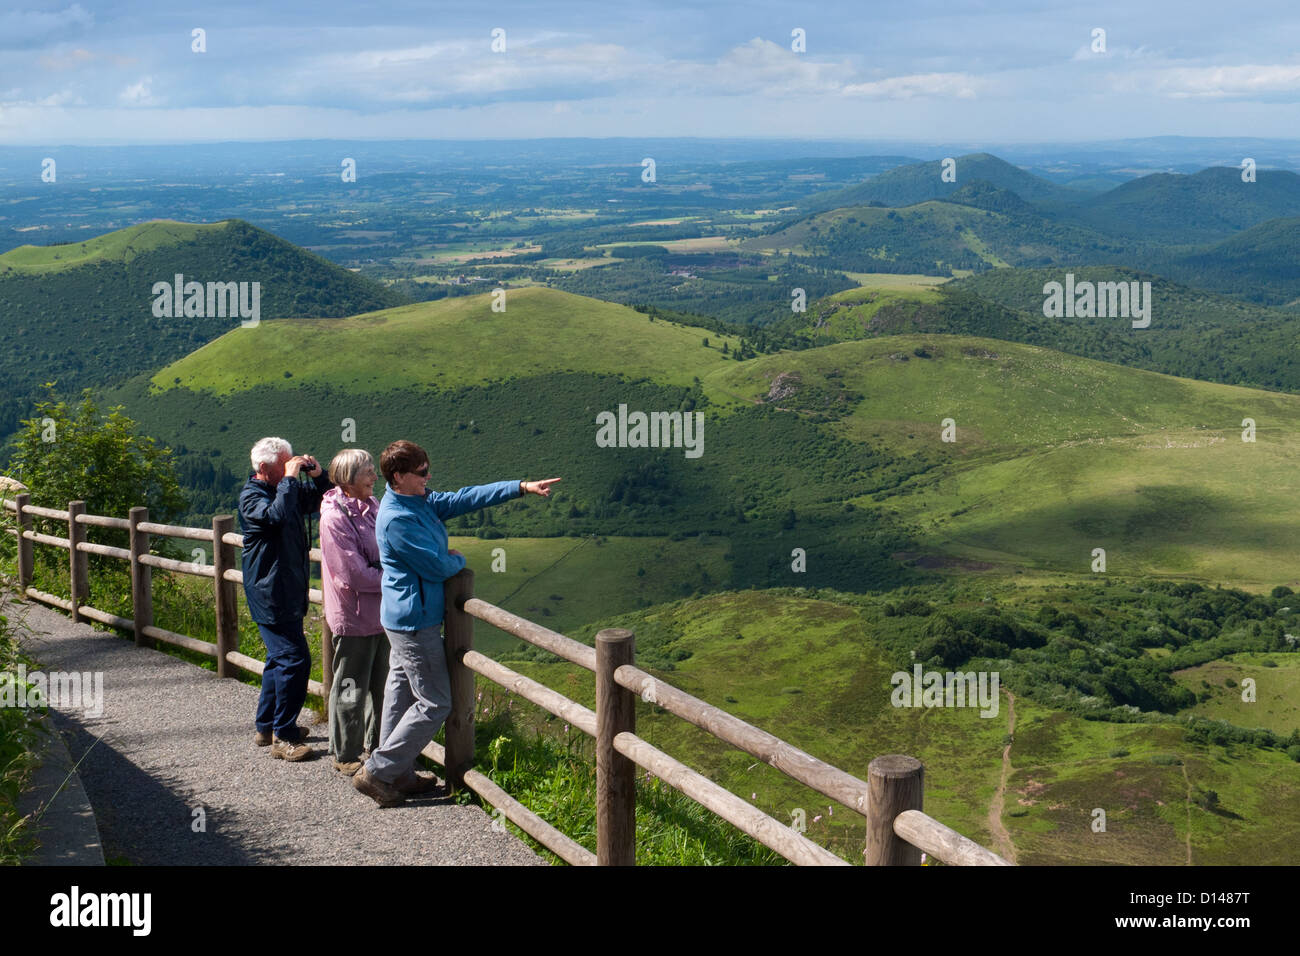 Les touristes à la recherche du sommet du Puy de Dôme pour la région volcanique du Puy de Dôme en Auvergne, France Banque D'Images